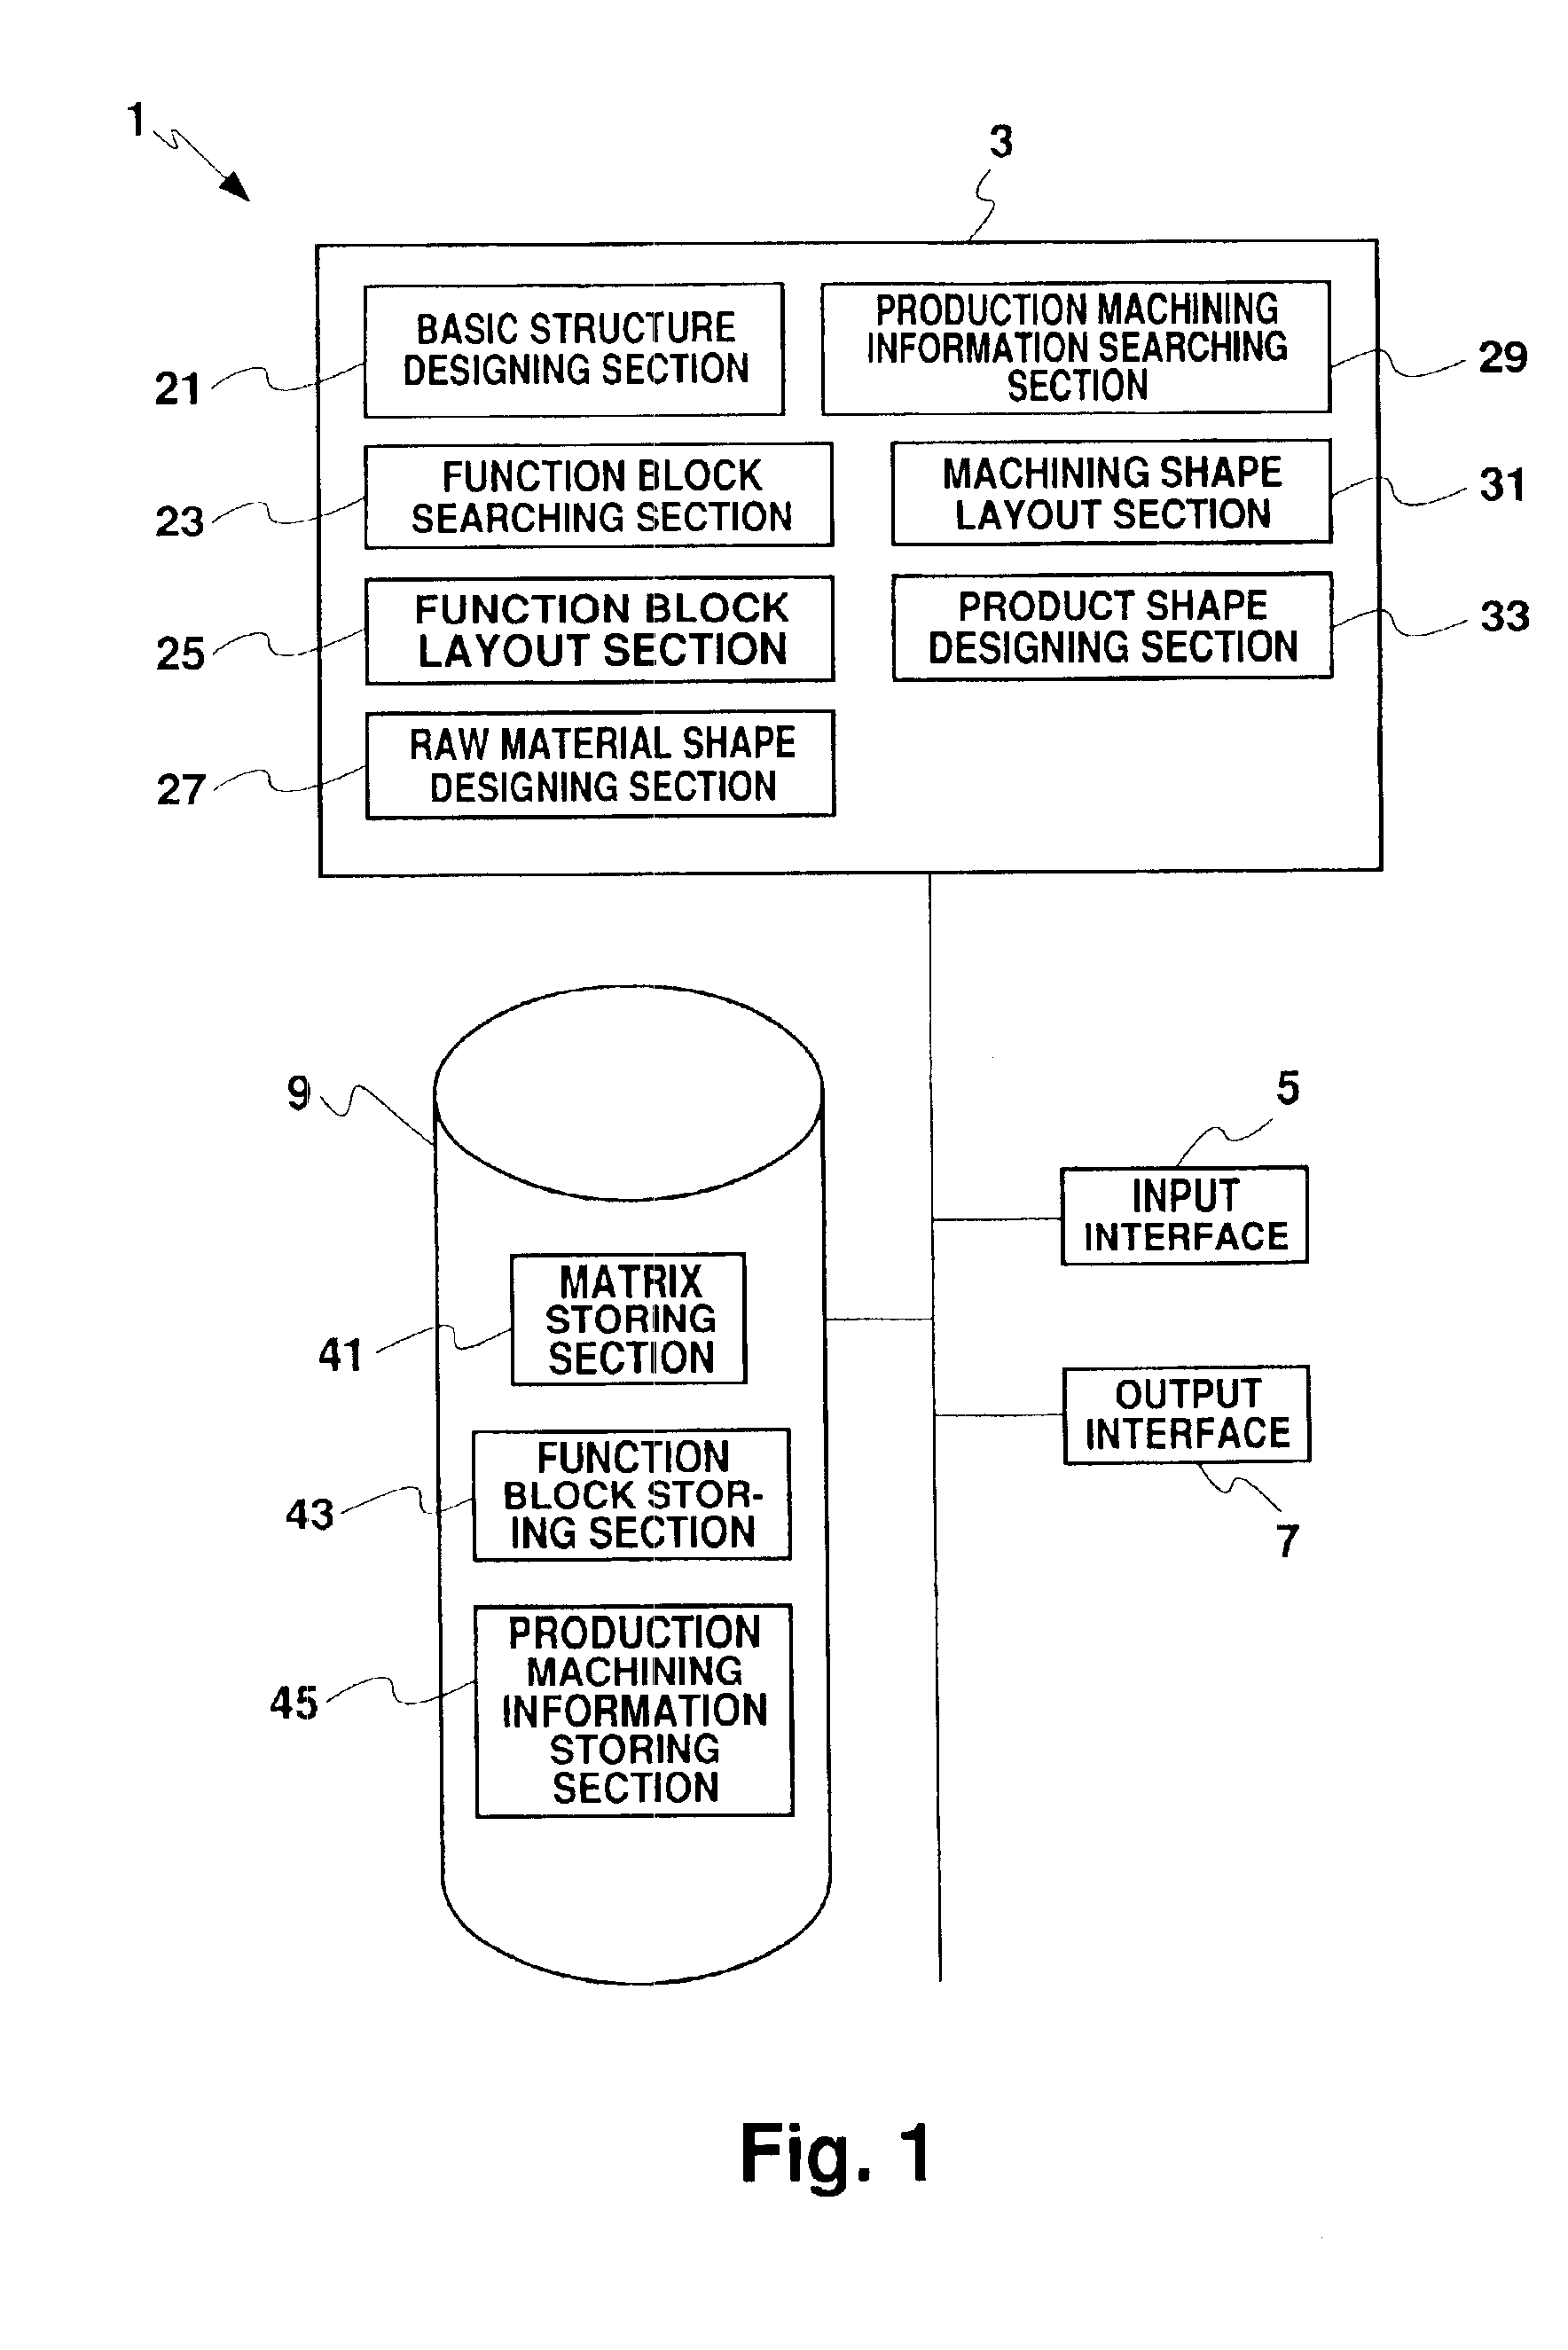 Unit designing apparatus and method